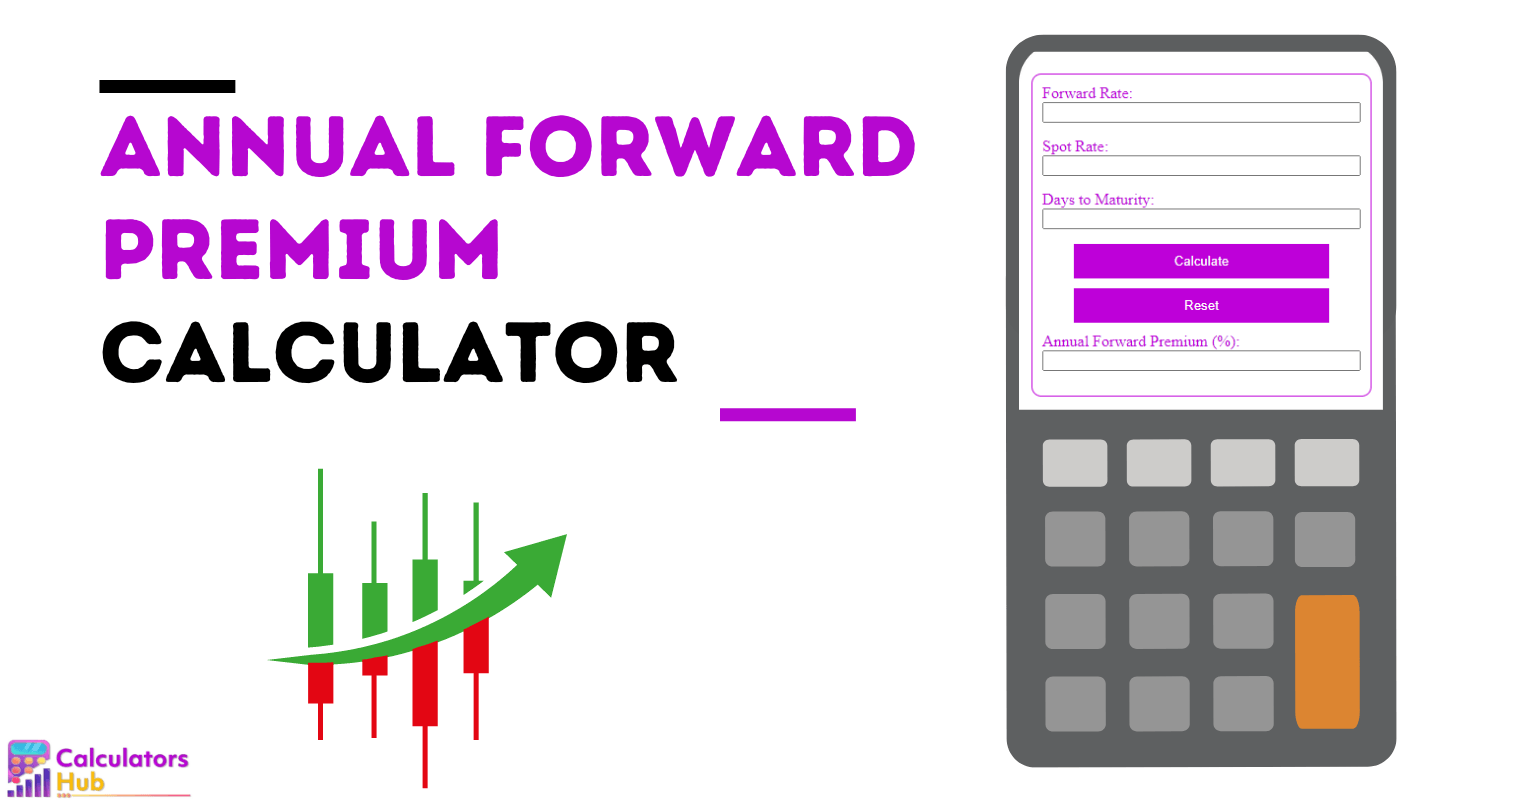 Annual Forward Premium Calculator